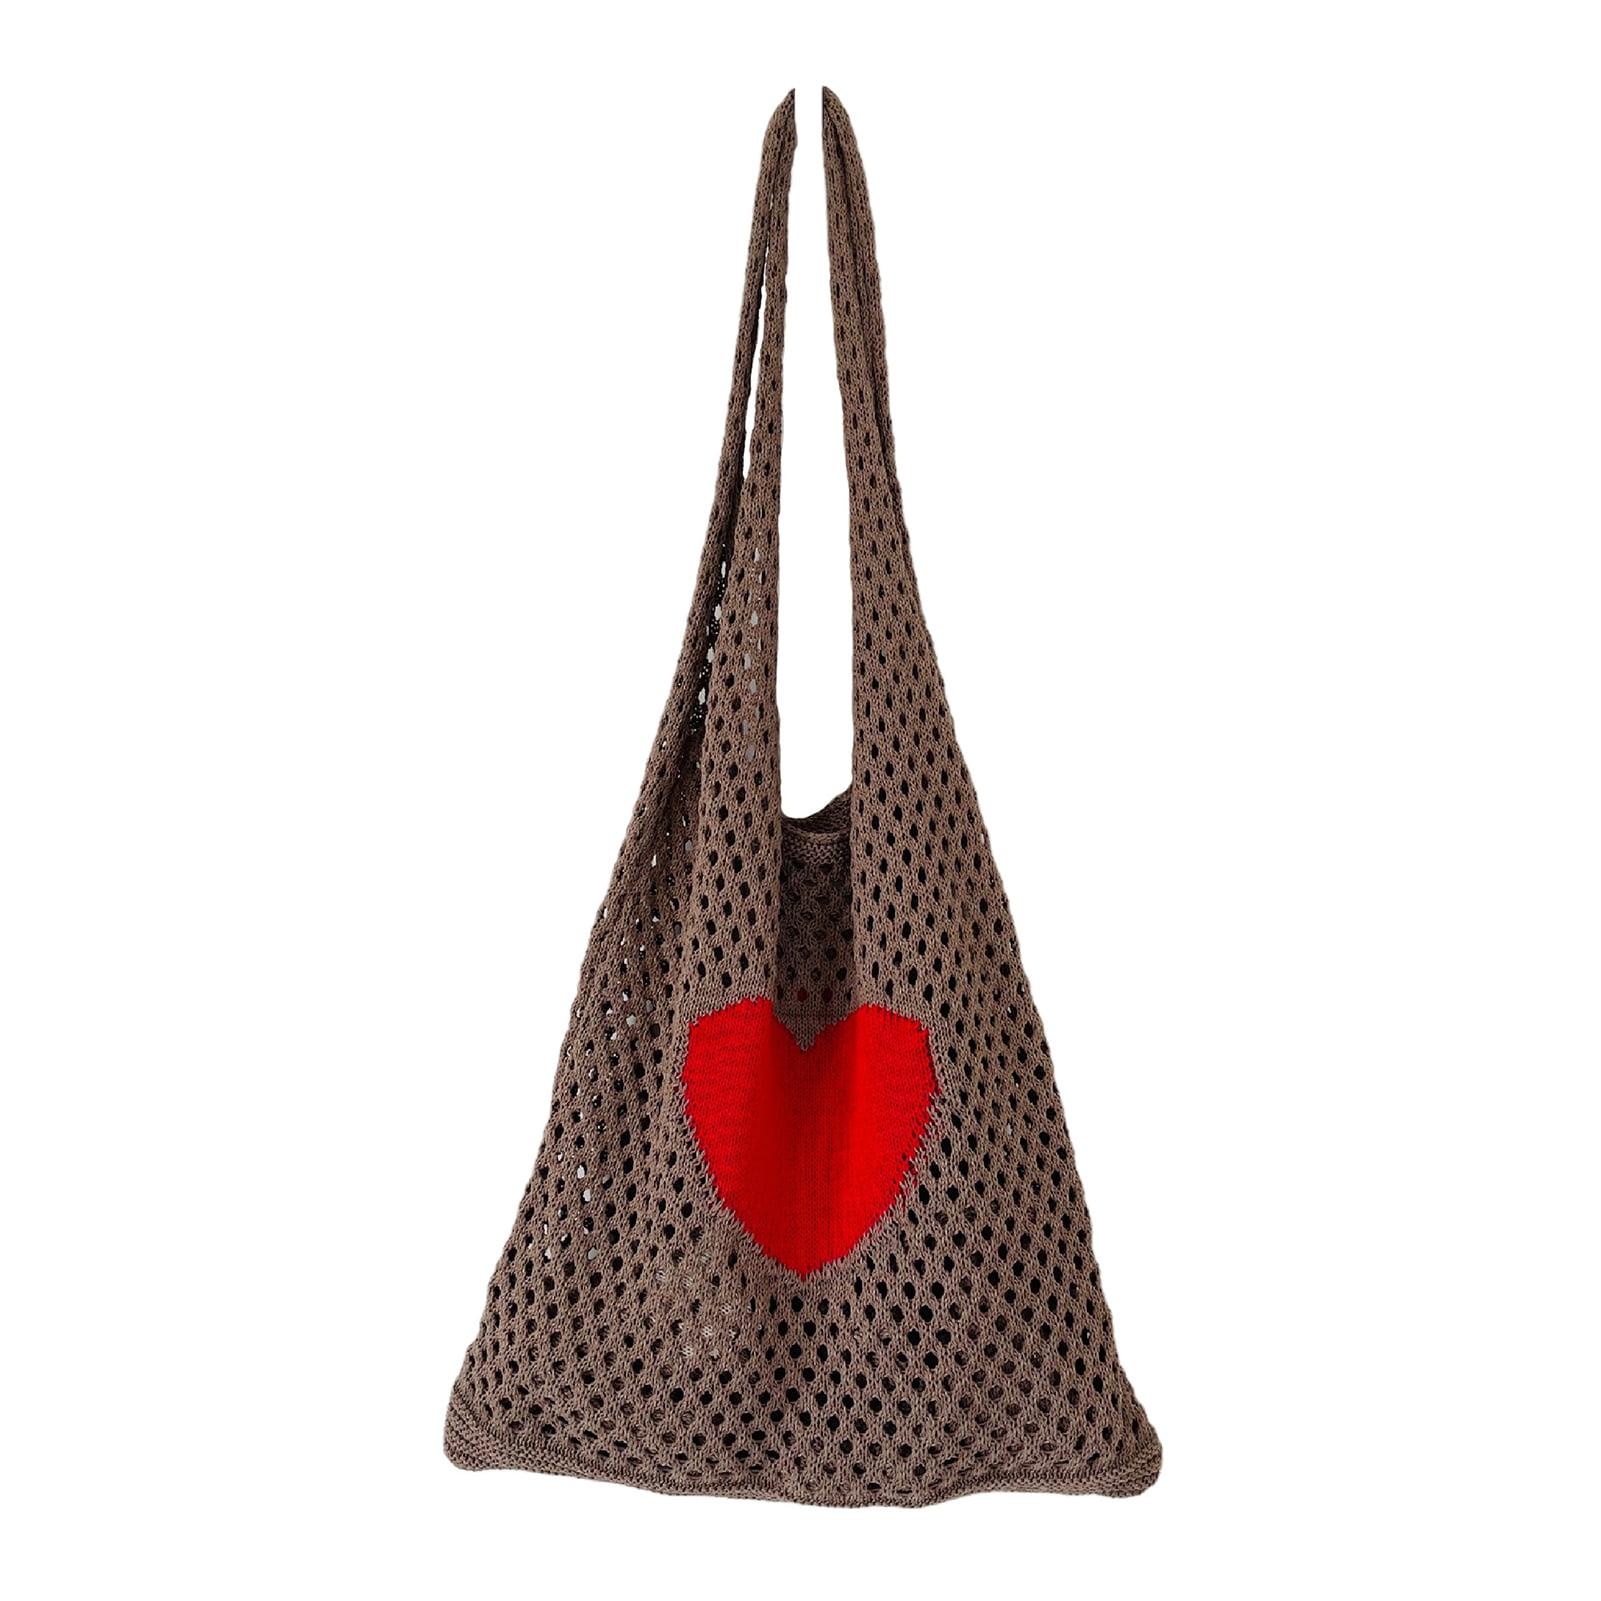 crochet heart tote bag